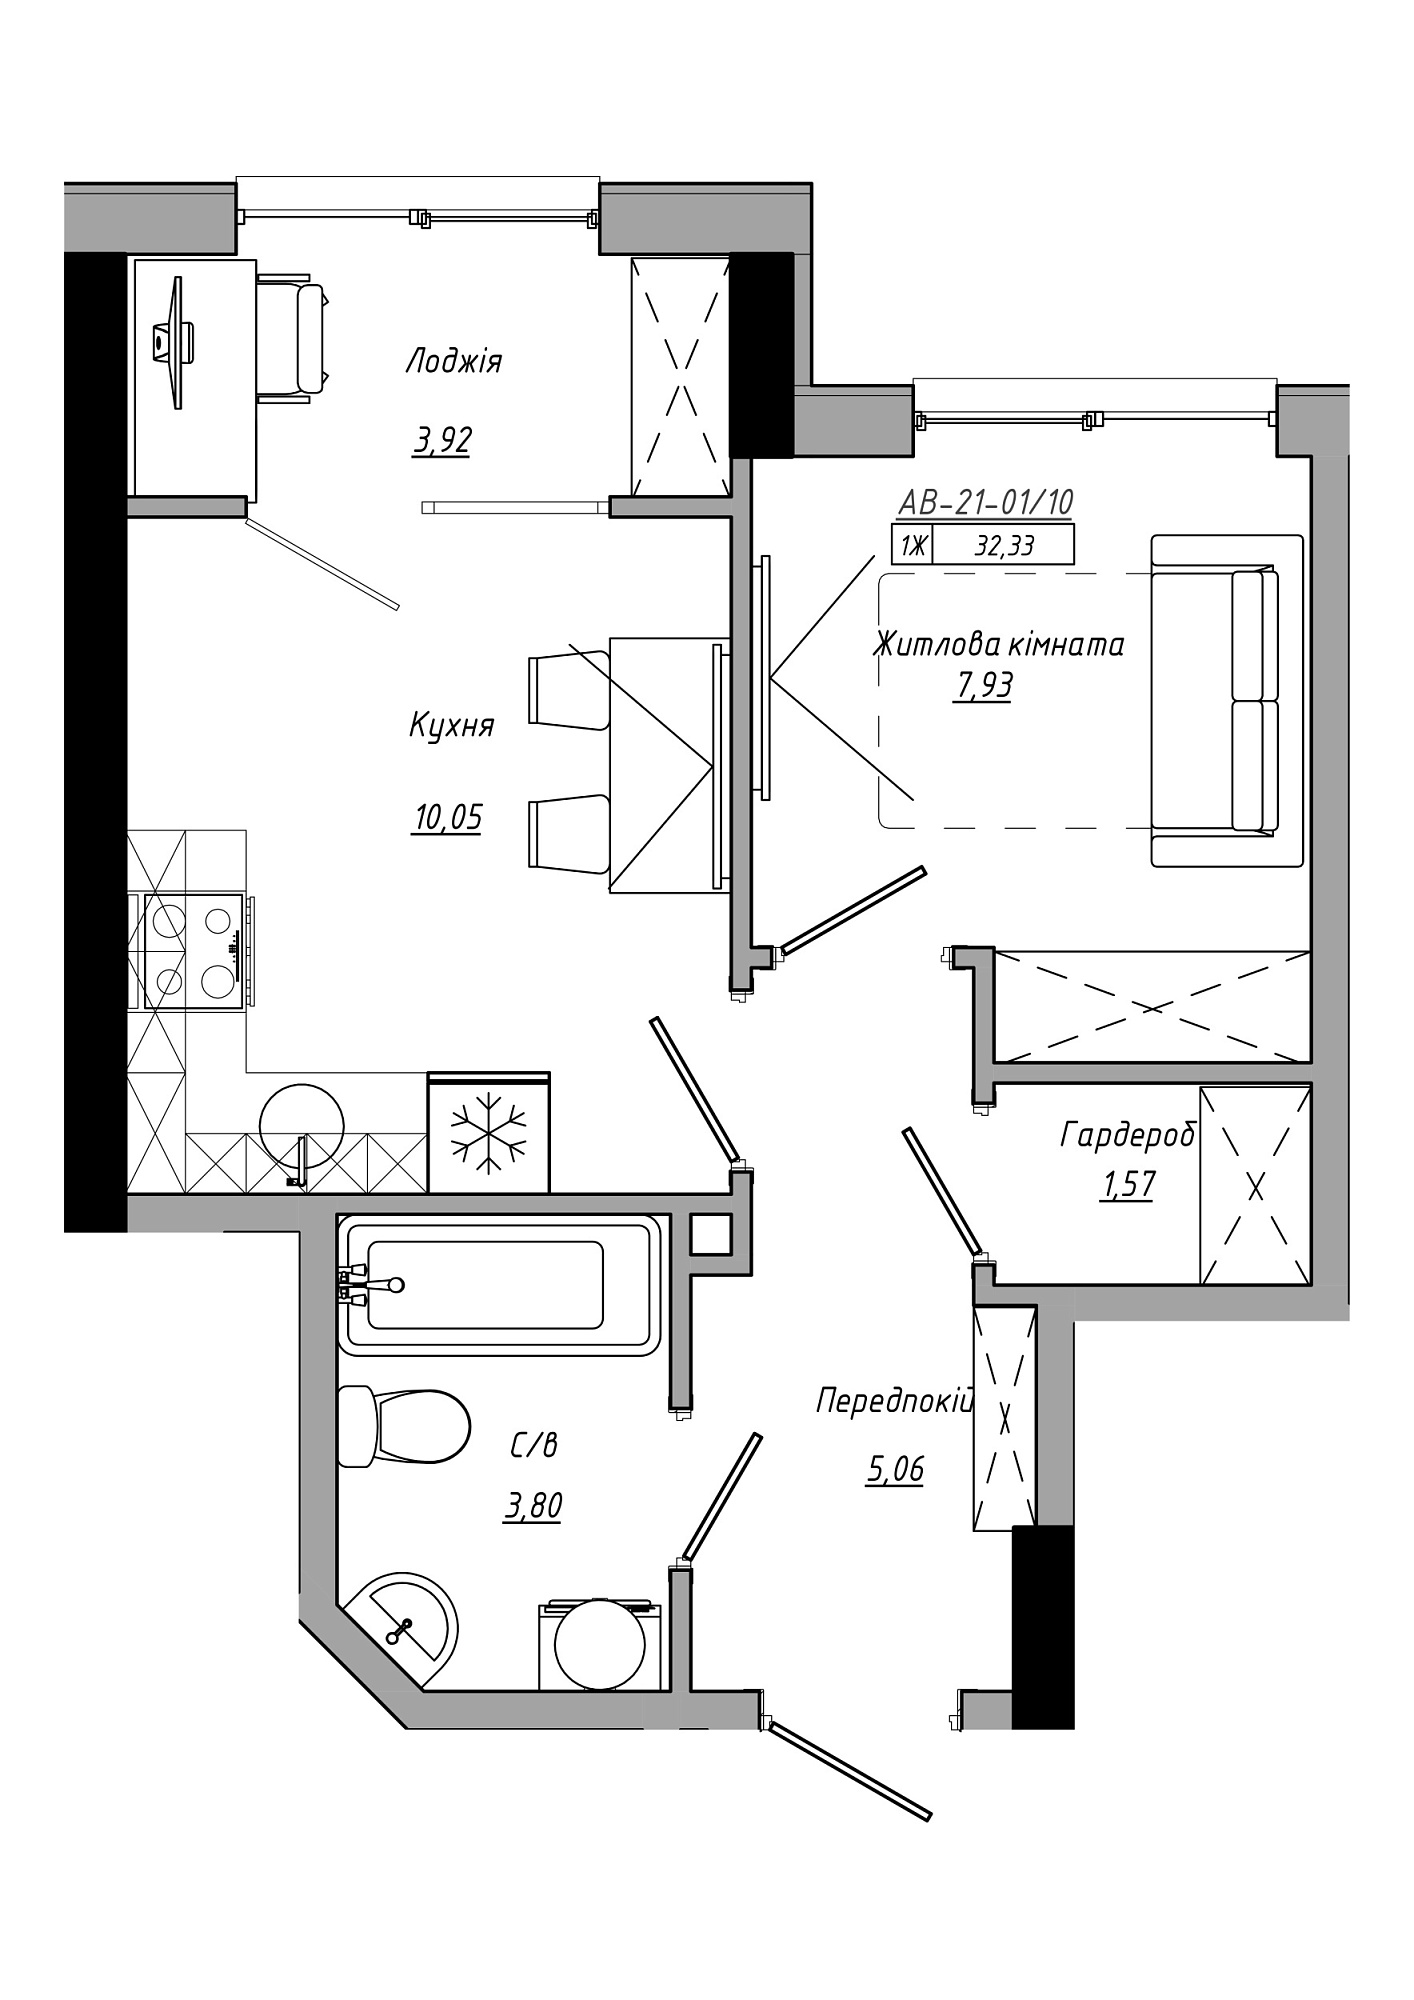 Планировка 1-к квартира площей 32.33м2, AB-21-01/00010.